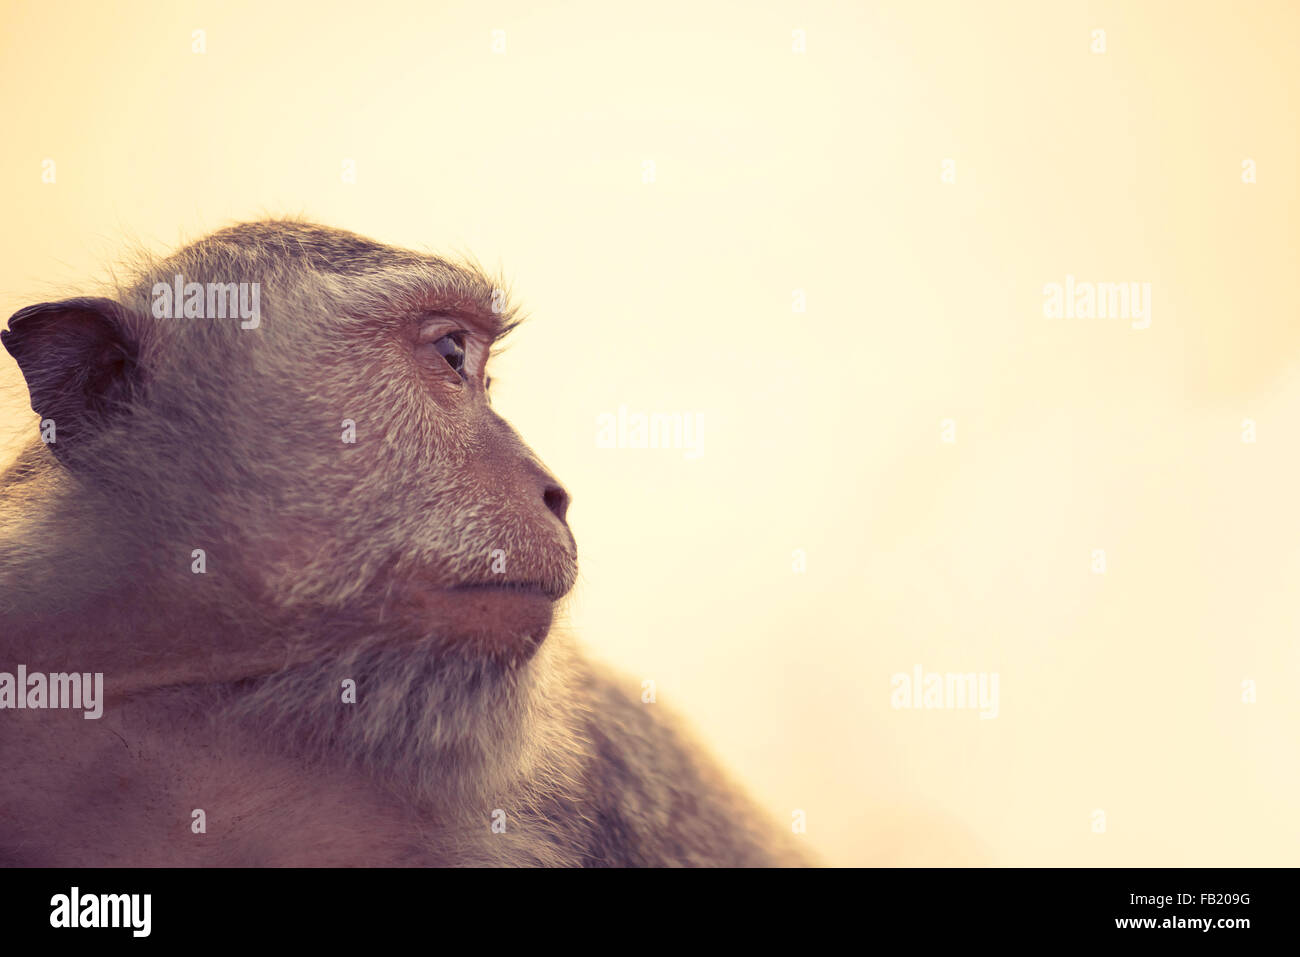 Wild monkey volto ritratto di profilo guardando a distanza con lo sfondo del cielo. La conservazione della fauna selvatica e i diritti degli animali campagna. Foto Stock